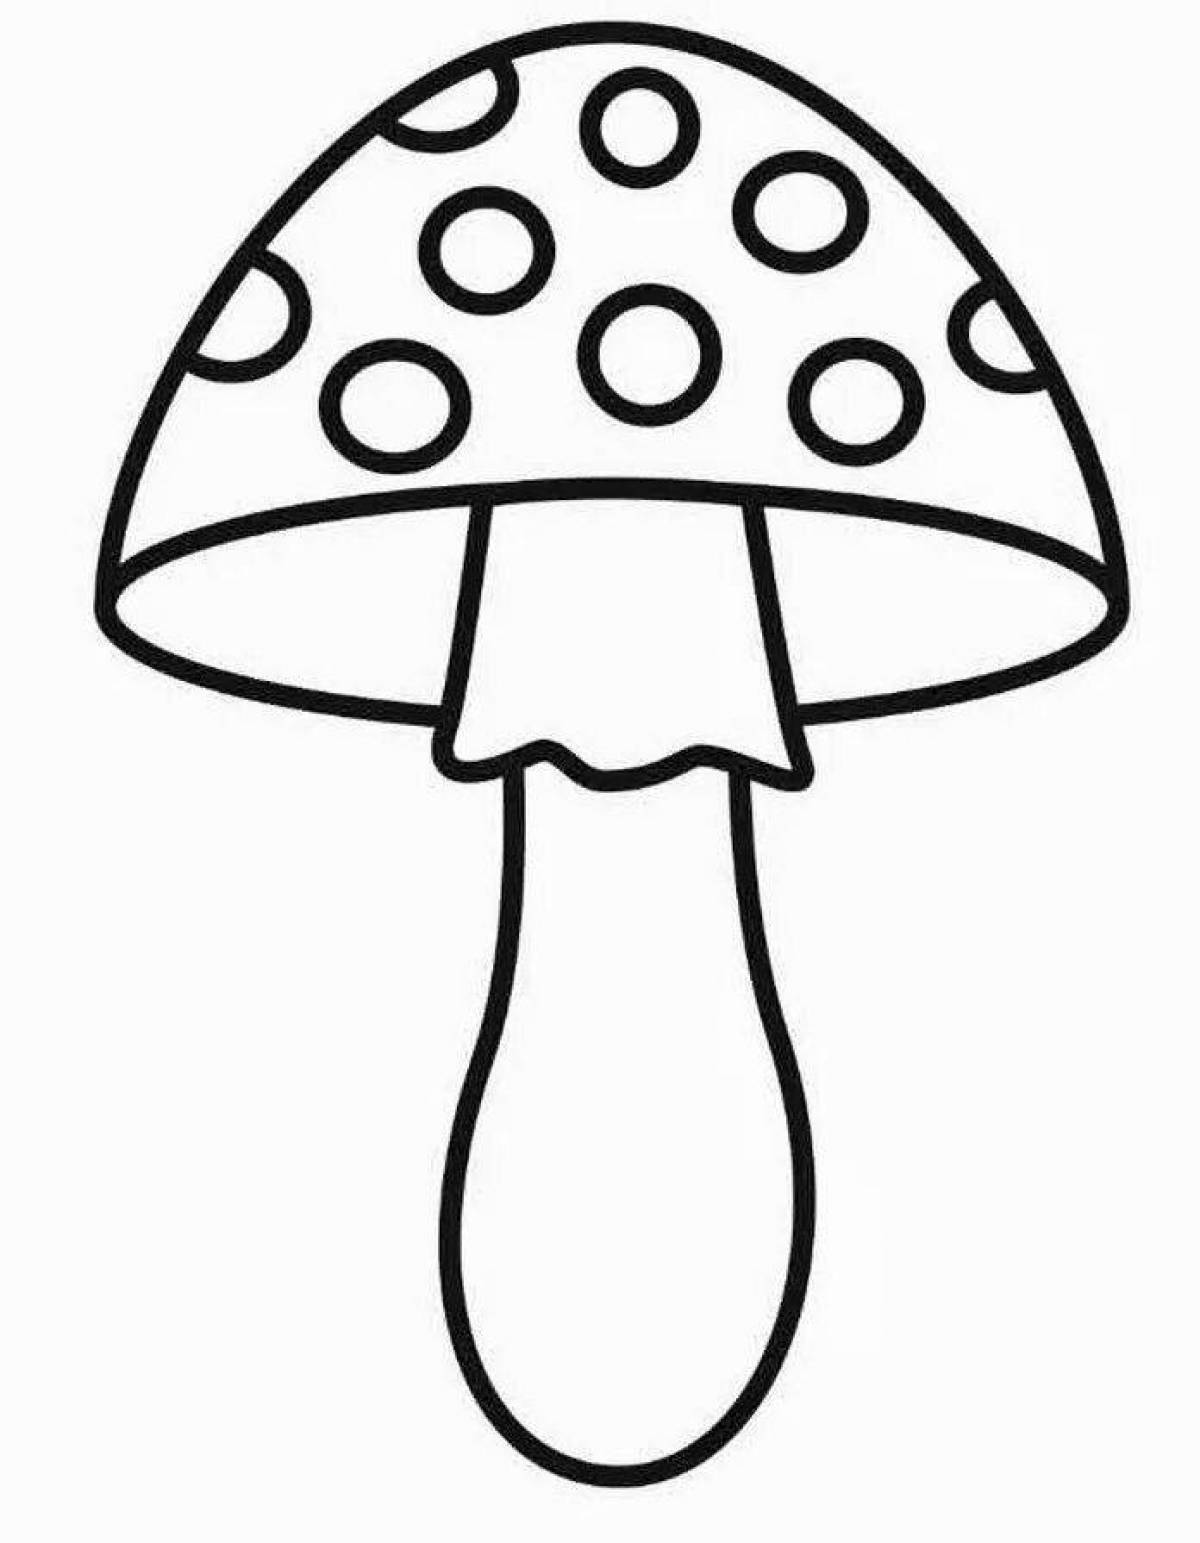 Увлекательная раскраска грибов-мухоморов